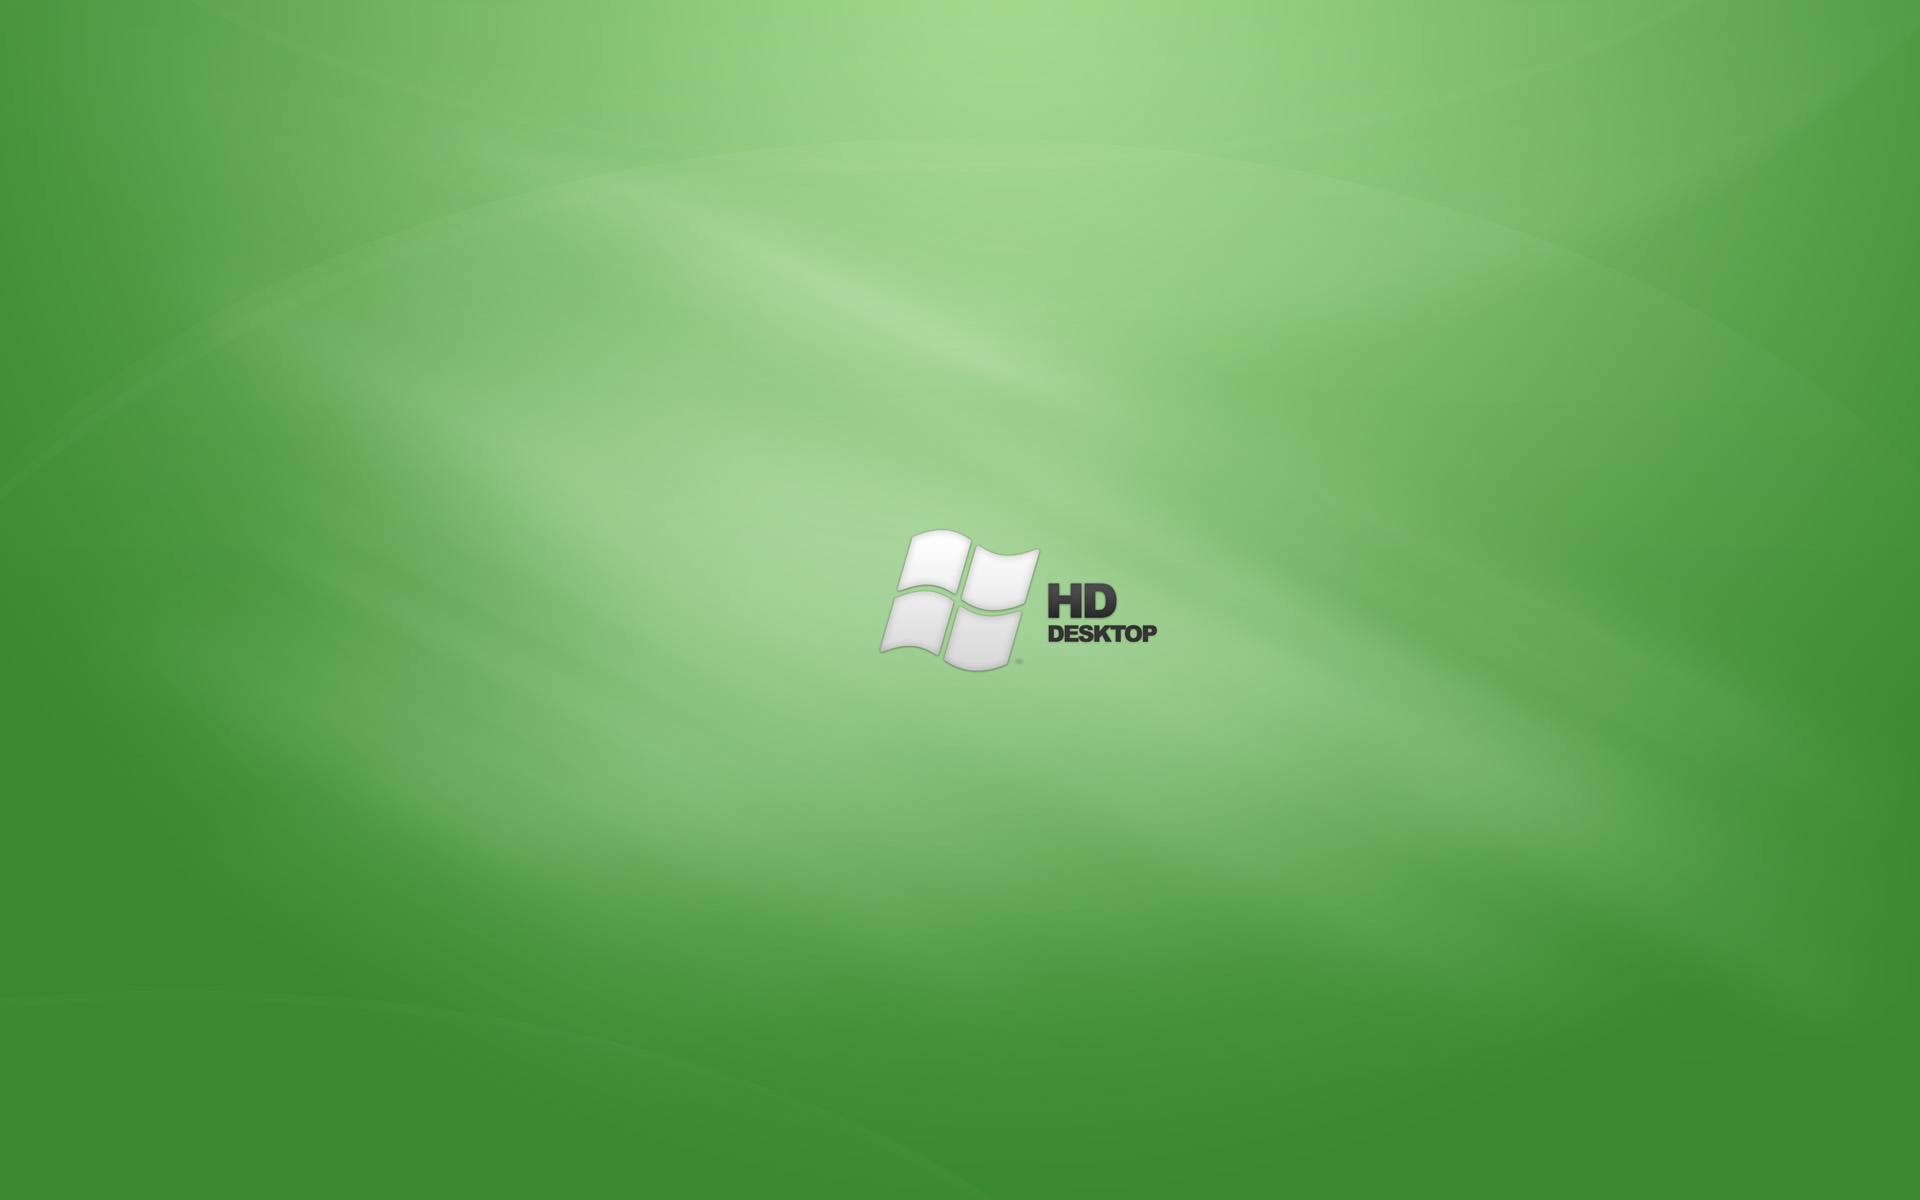 Green HD Desktop wallpapers | Green HD Desktop stock photos